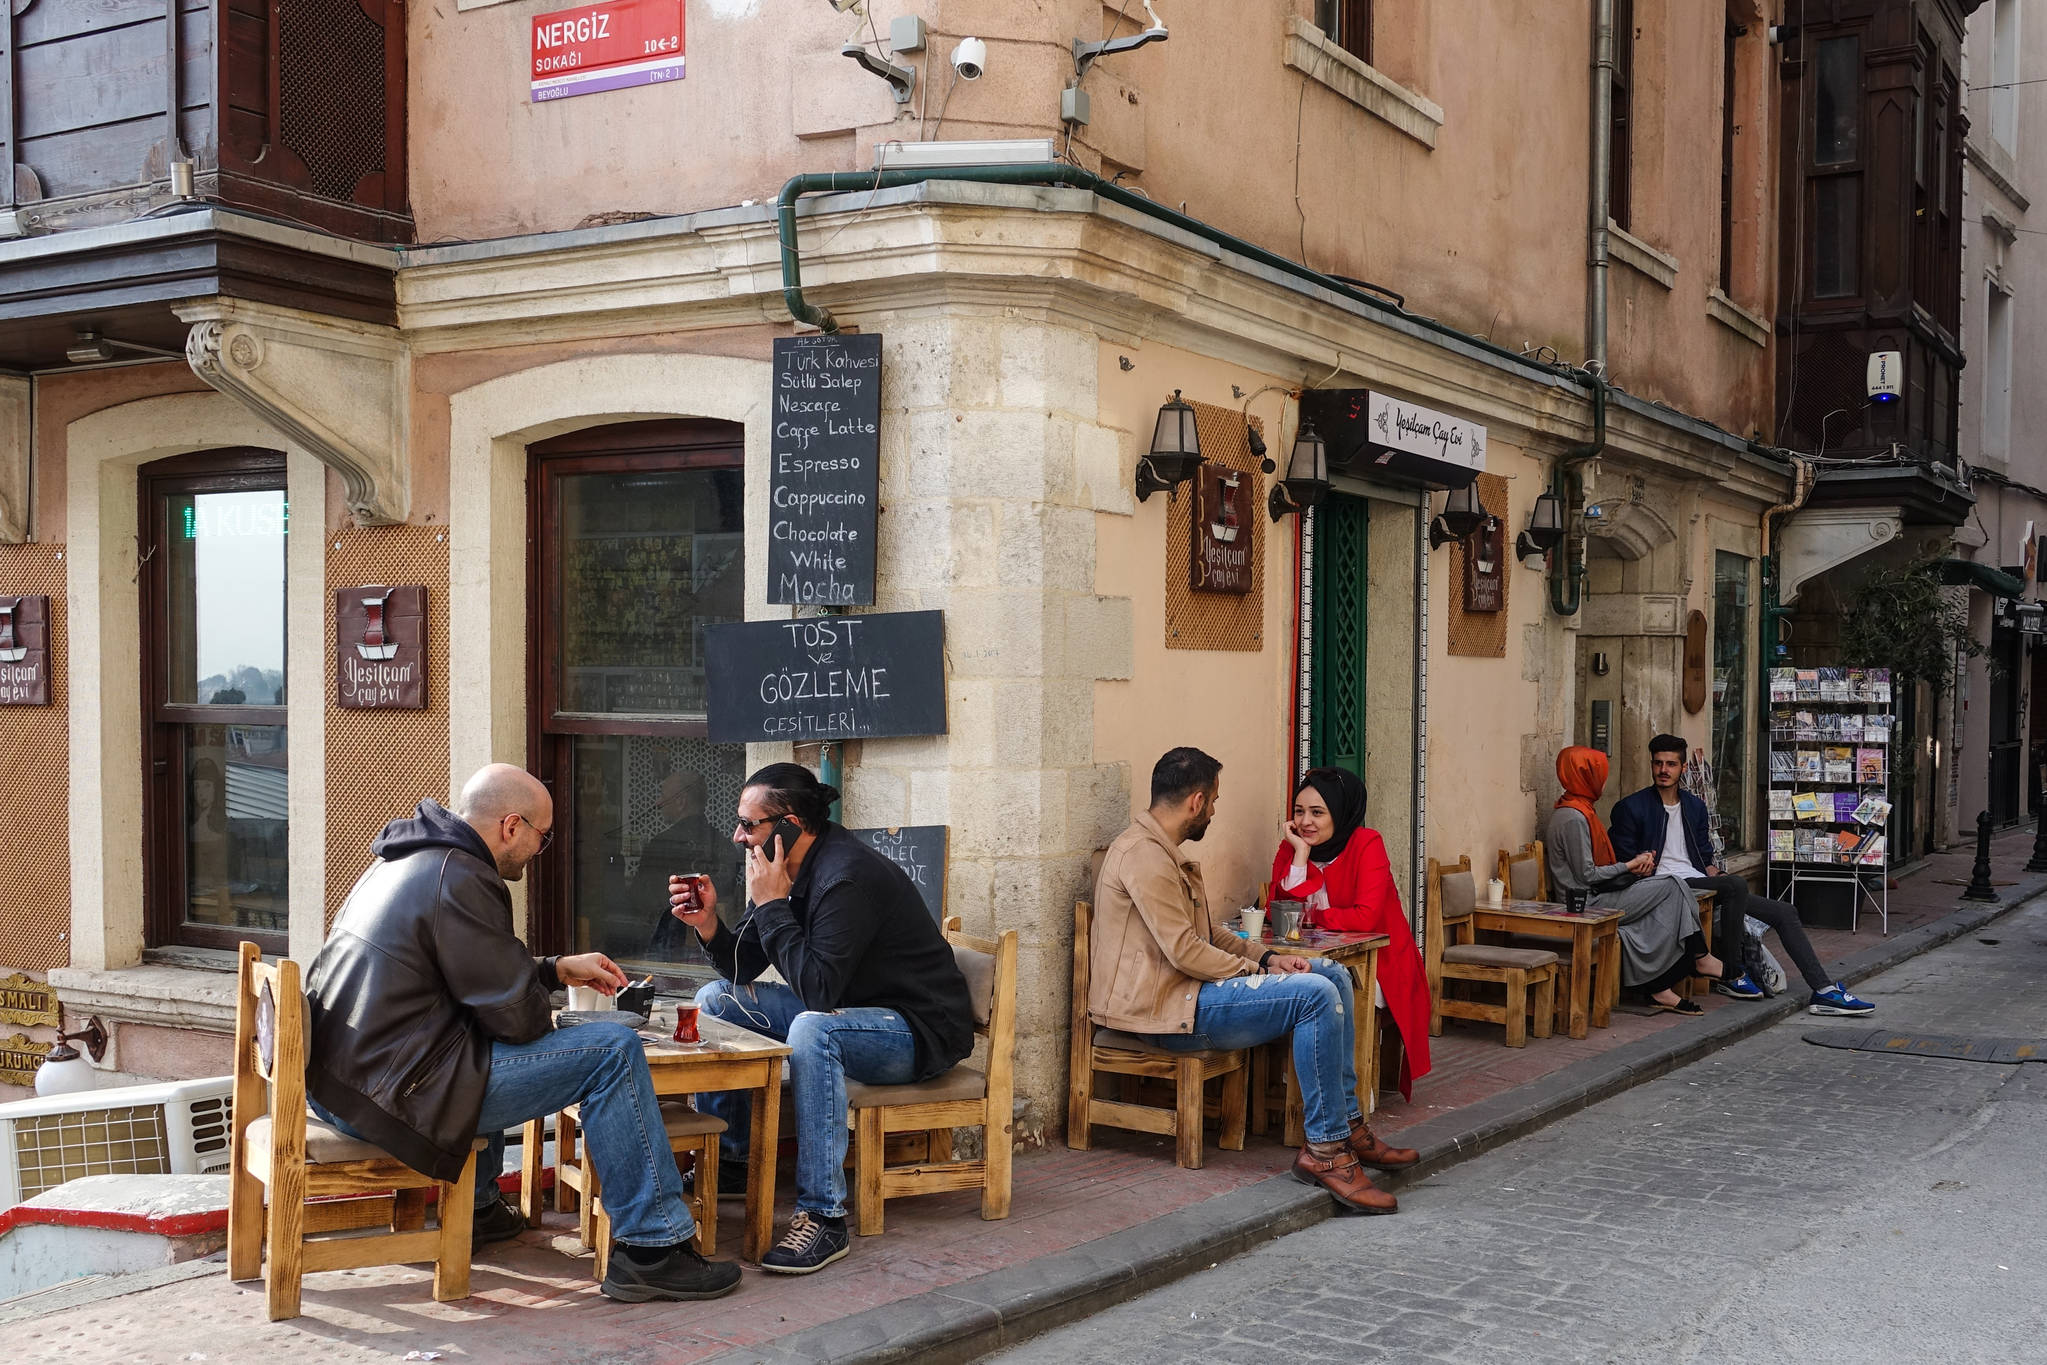 터키인은 커피보다 차이(터키식 홍차)를 즐겨 마신다. 골목마다 카페 야외 테이블에 앉아 차이를 마시며 담소를 나누는 사람을 볼 수 있다.